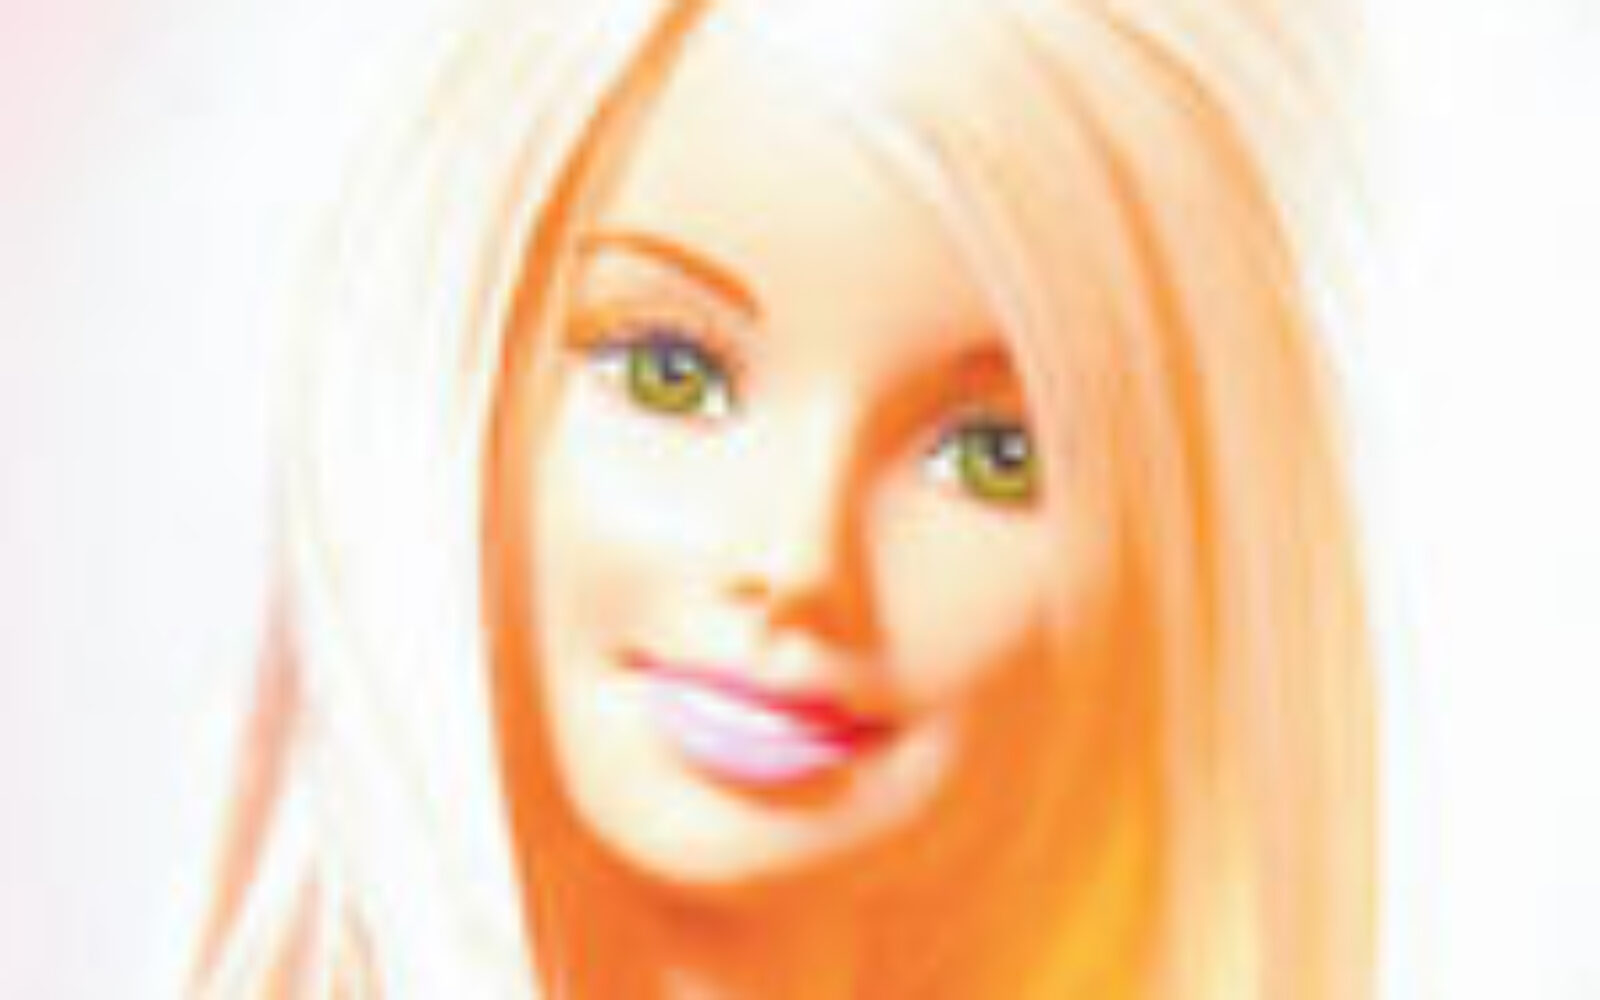 Barbie запись приватов